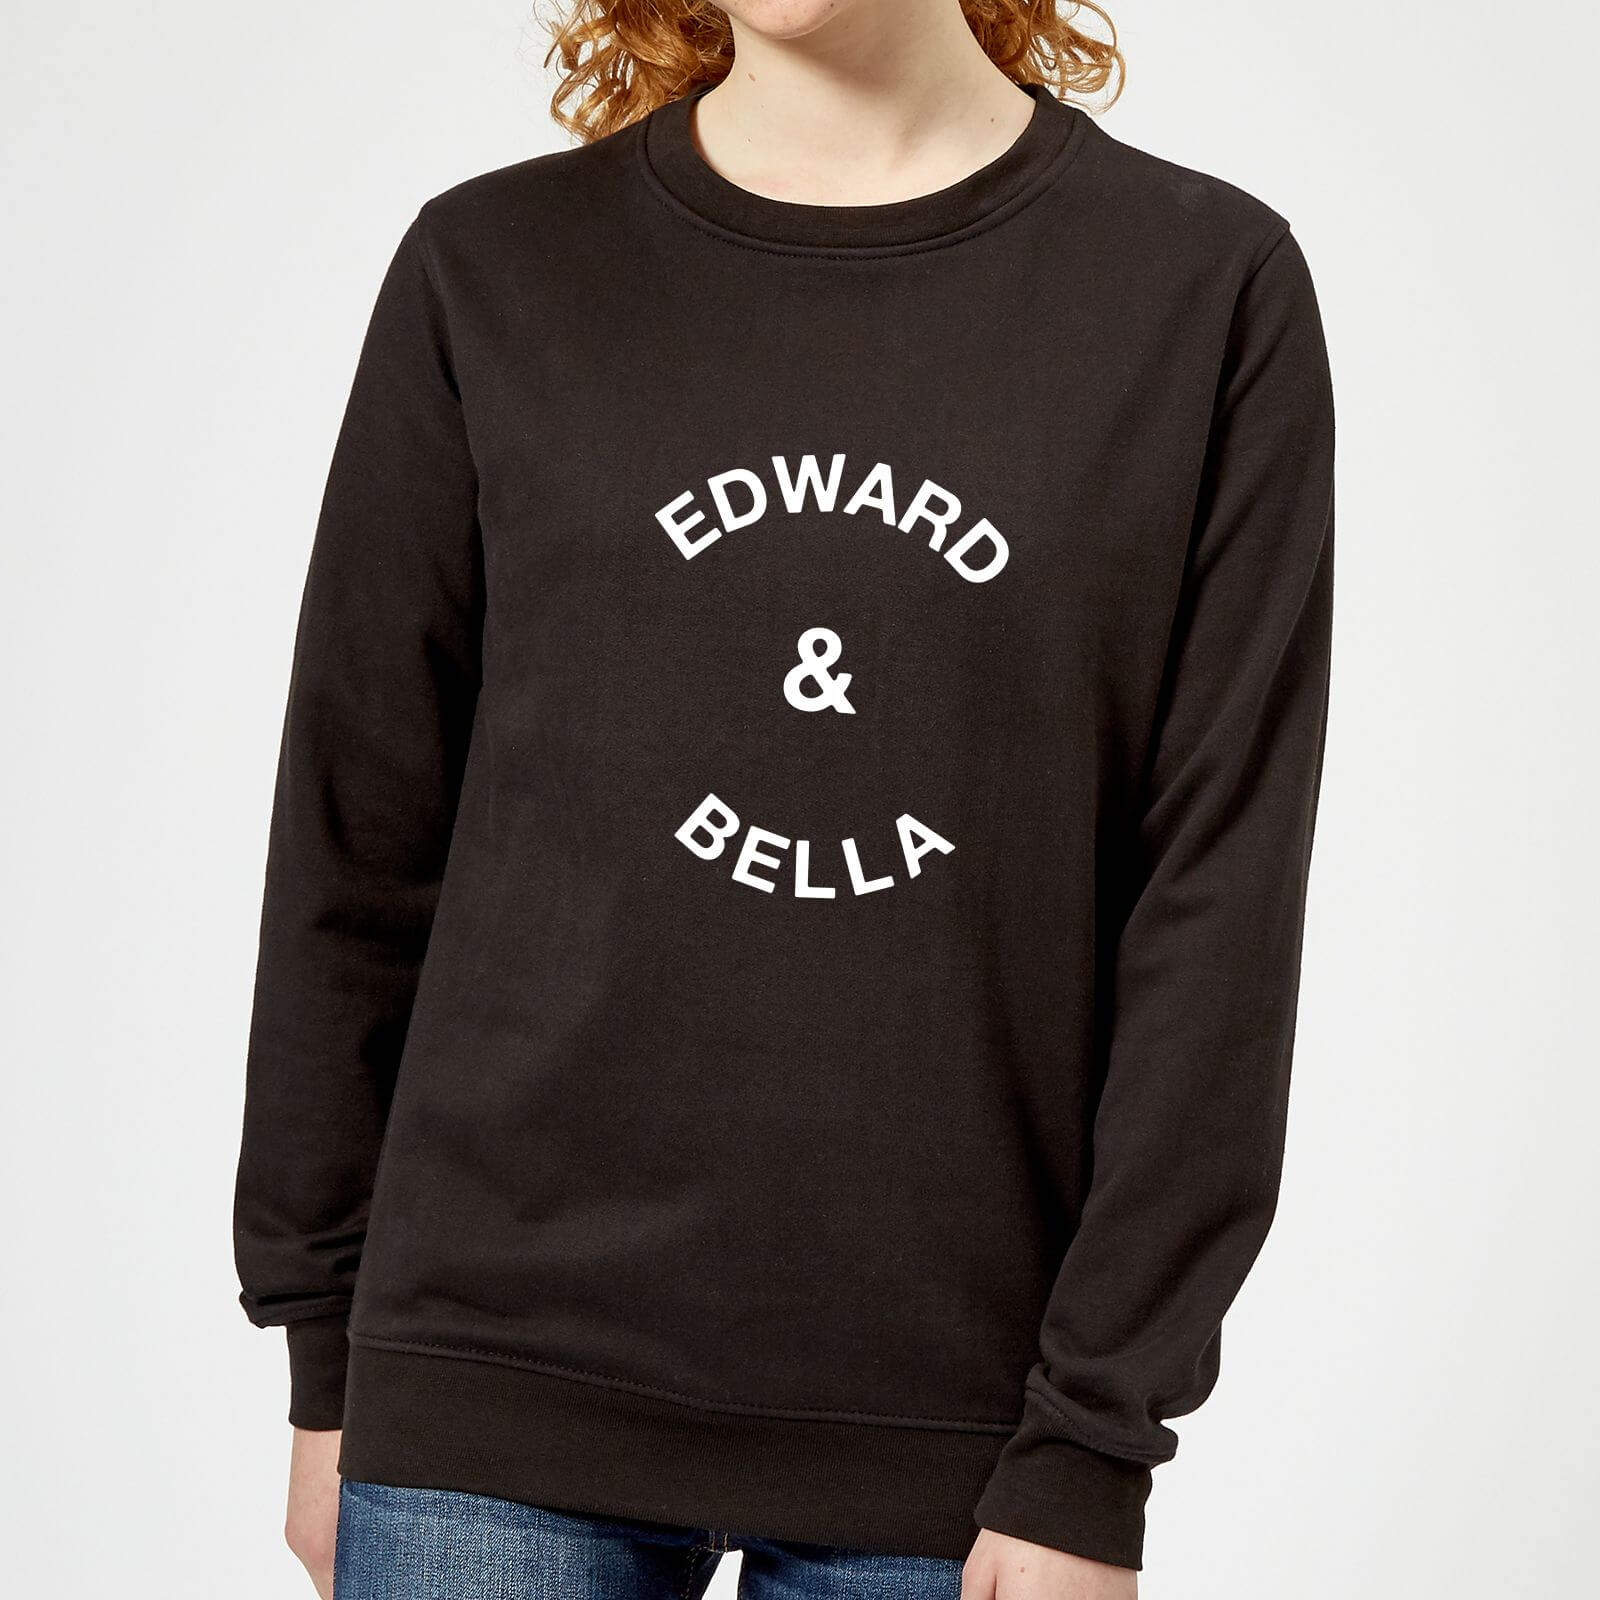 Edward & Bella Women's Sweatshirt - Black - S - Black